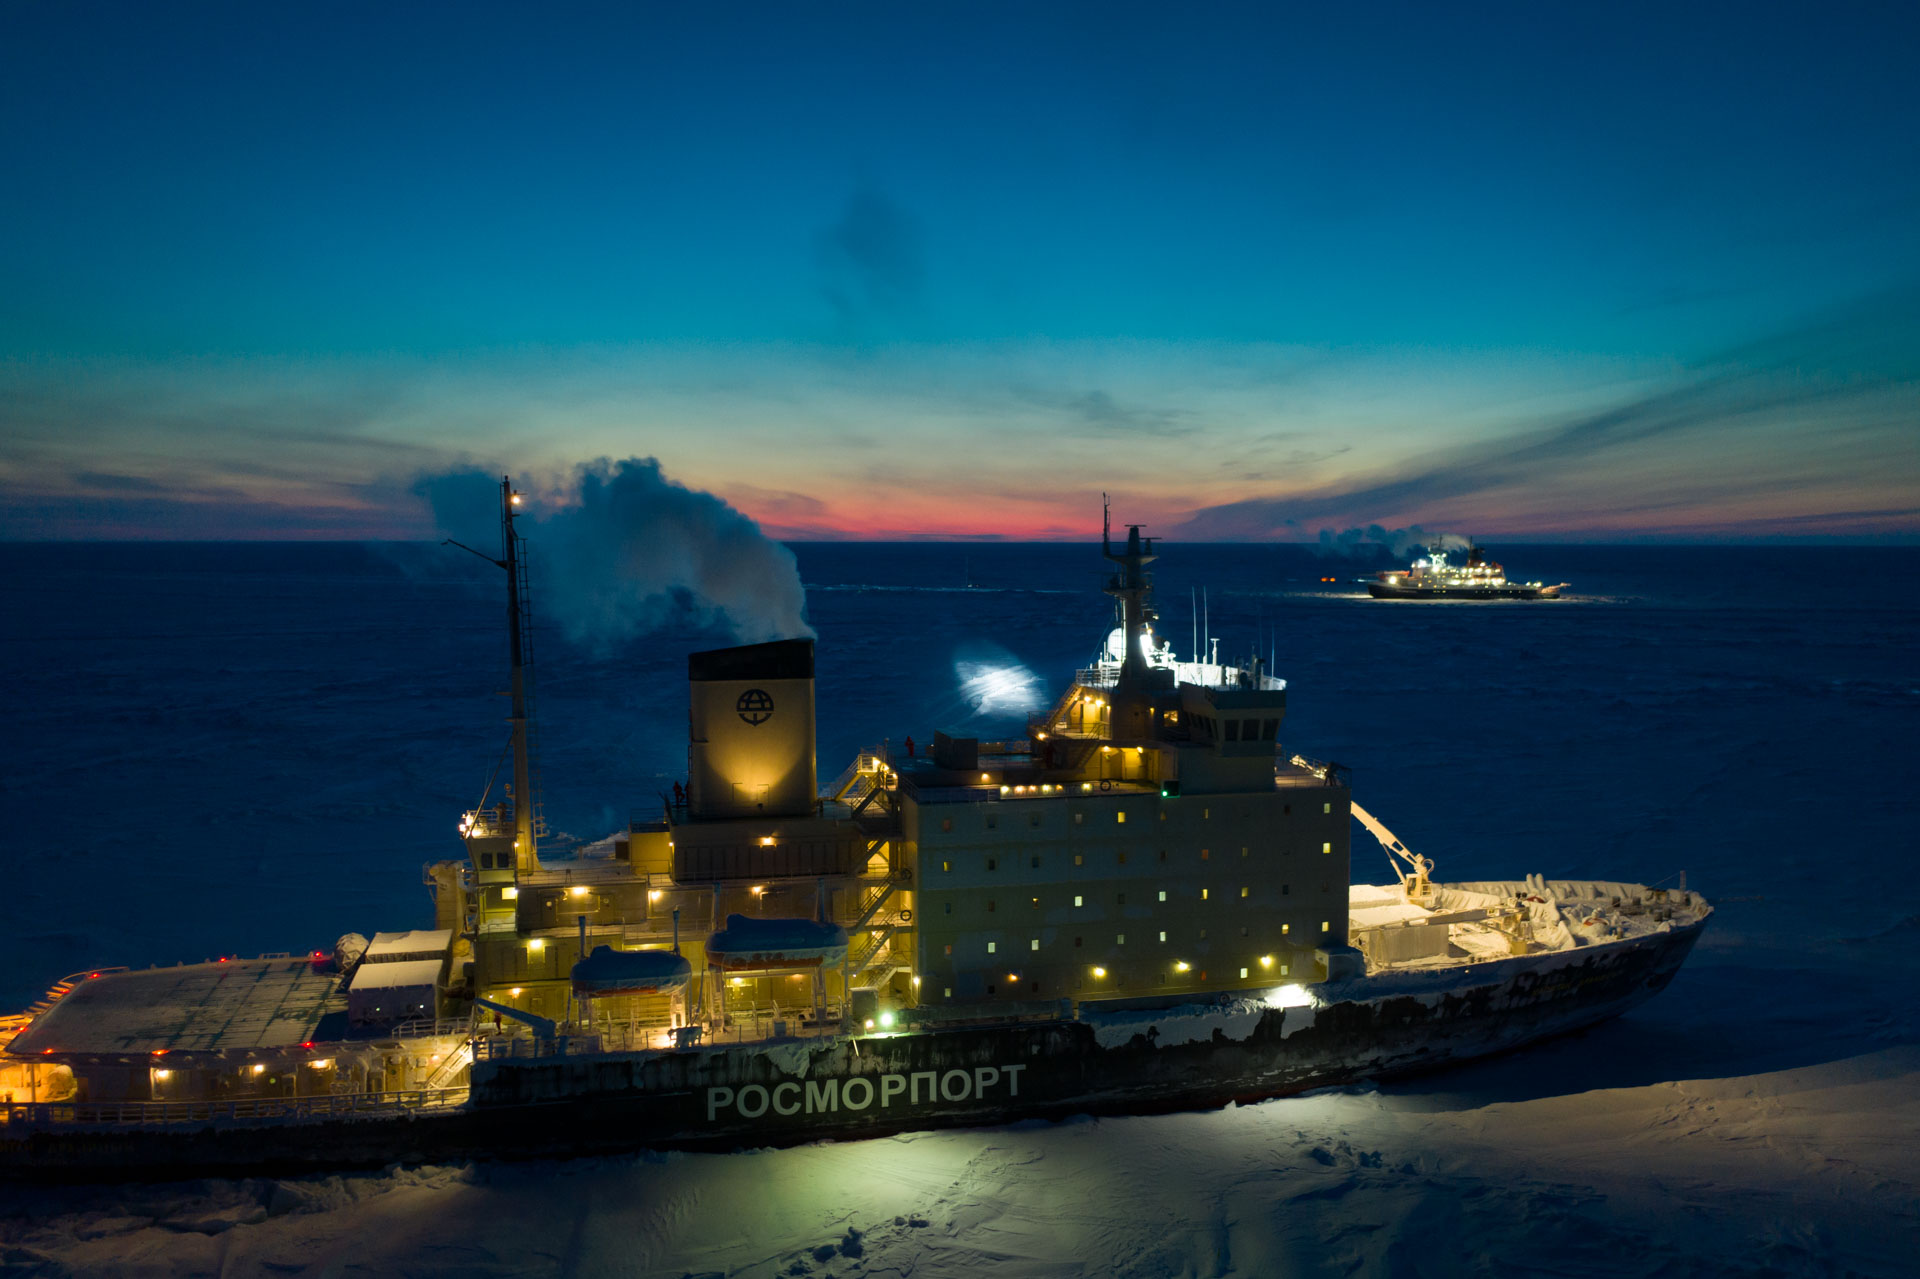 Kapitan Dranitsyn icebreaker reaches Polarstern during MOSAiC